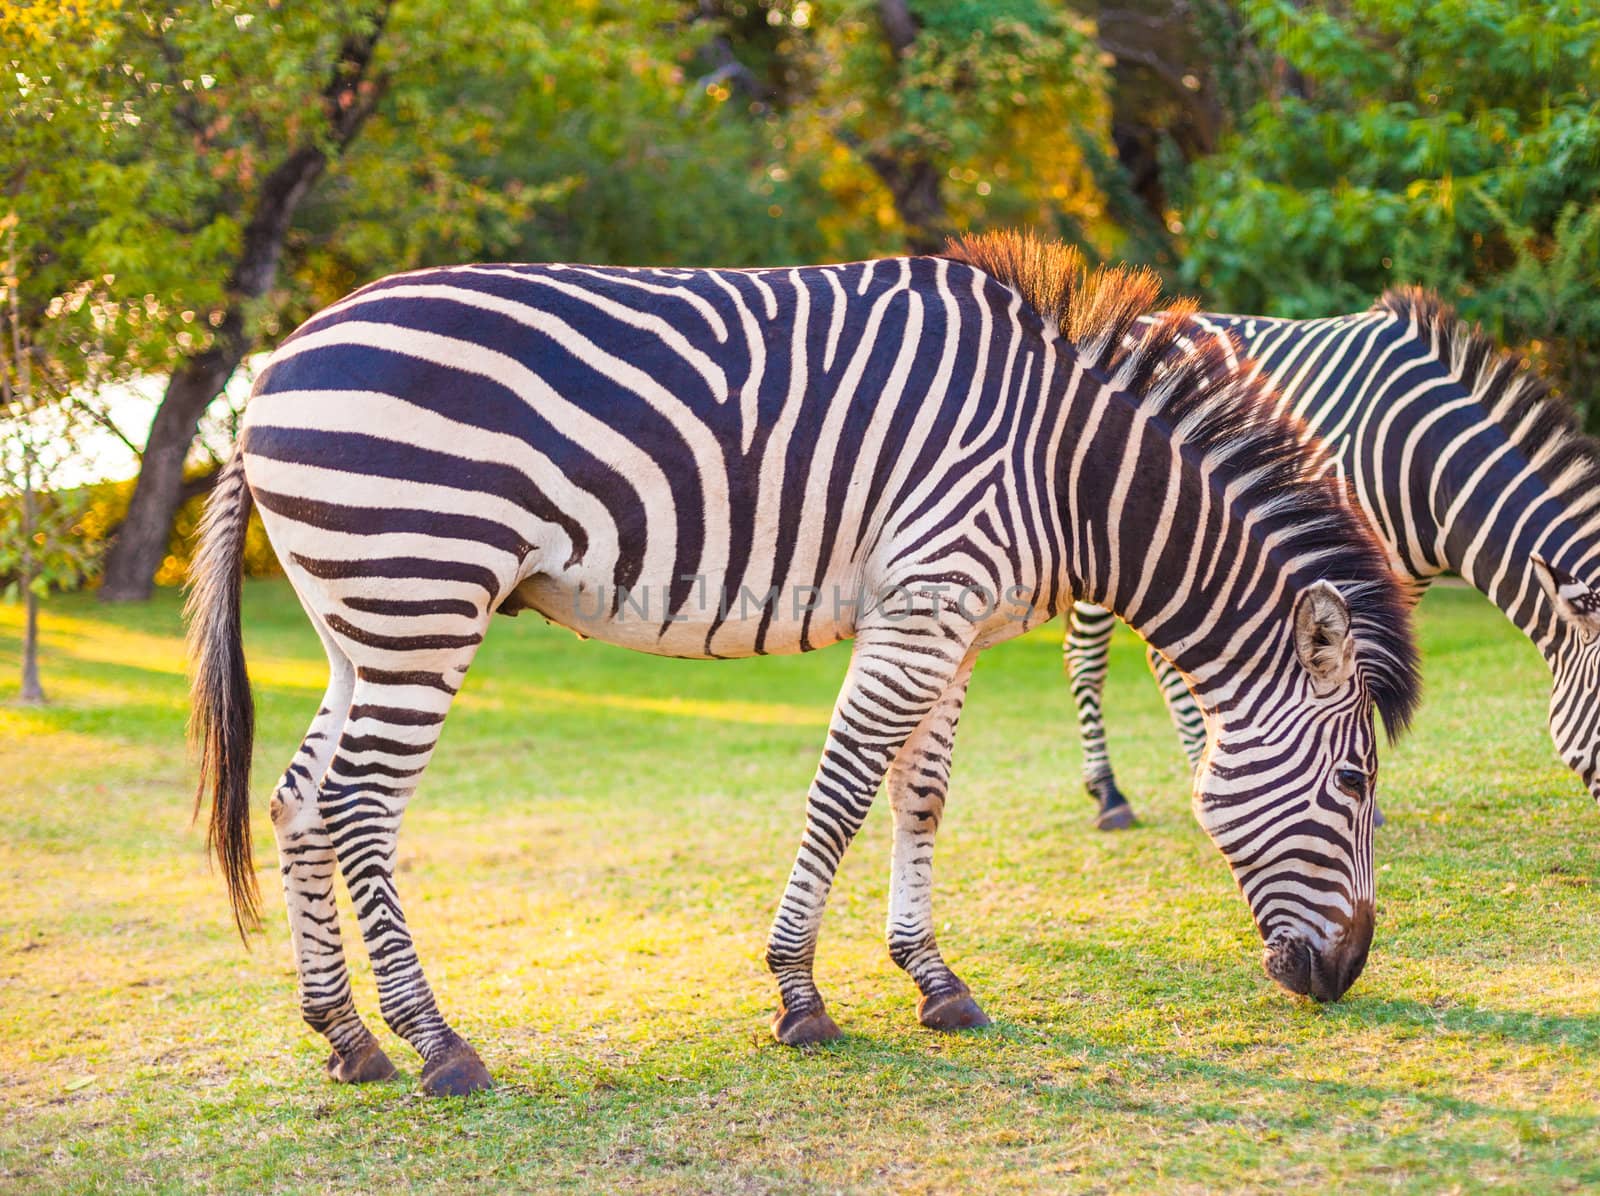 Plains zebra (Equus quagga) grazing by edan